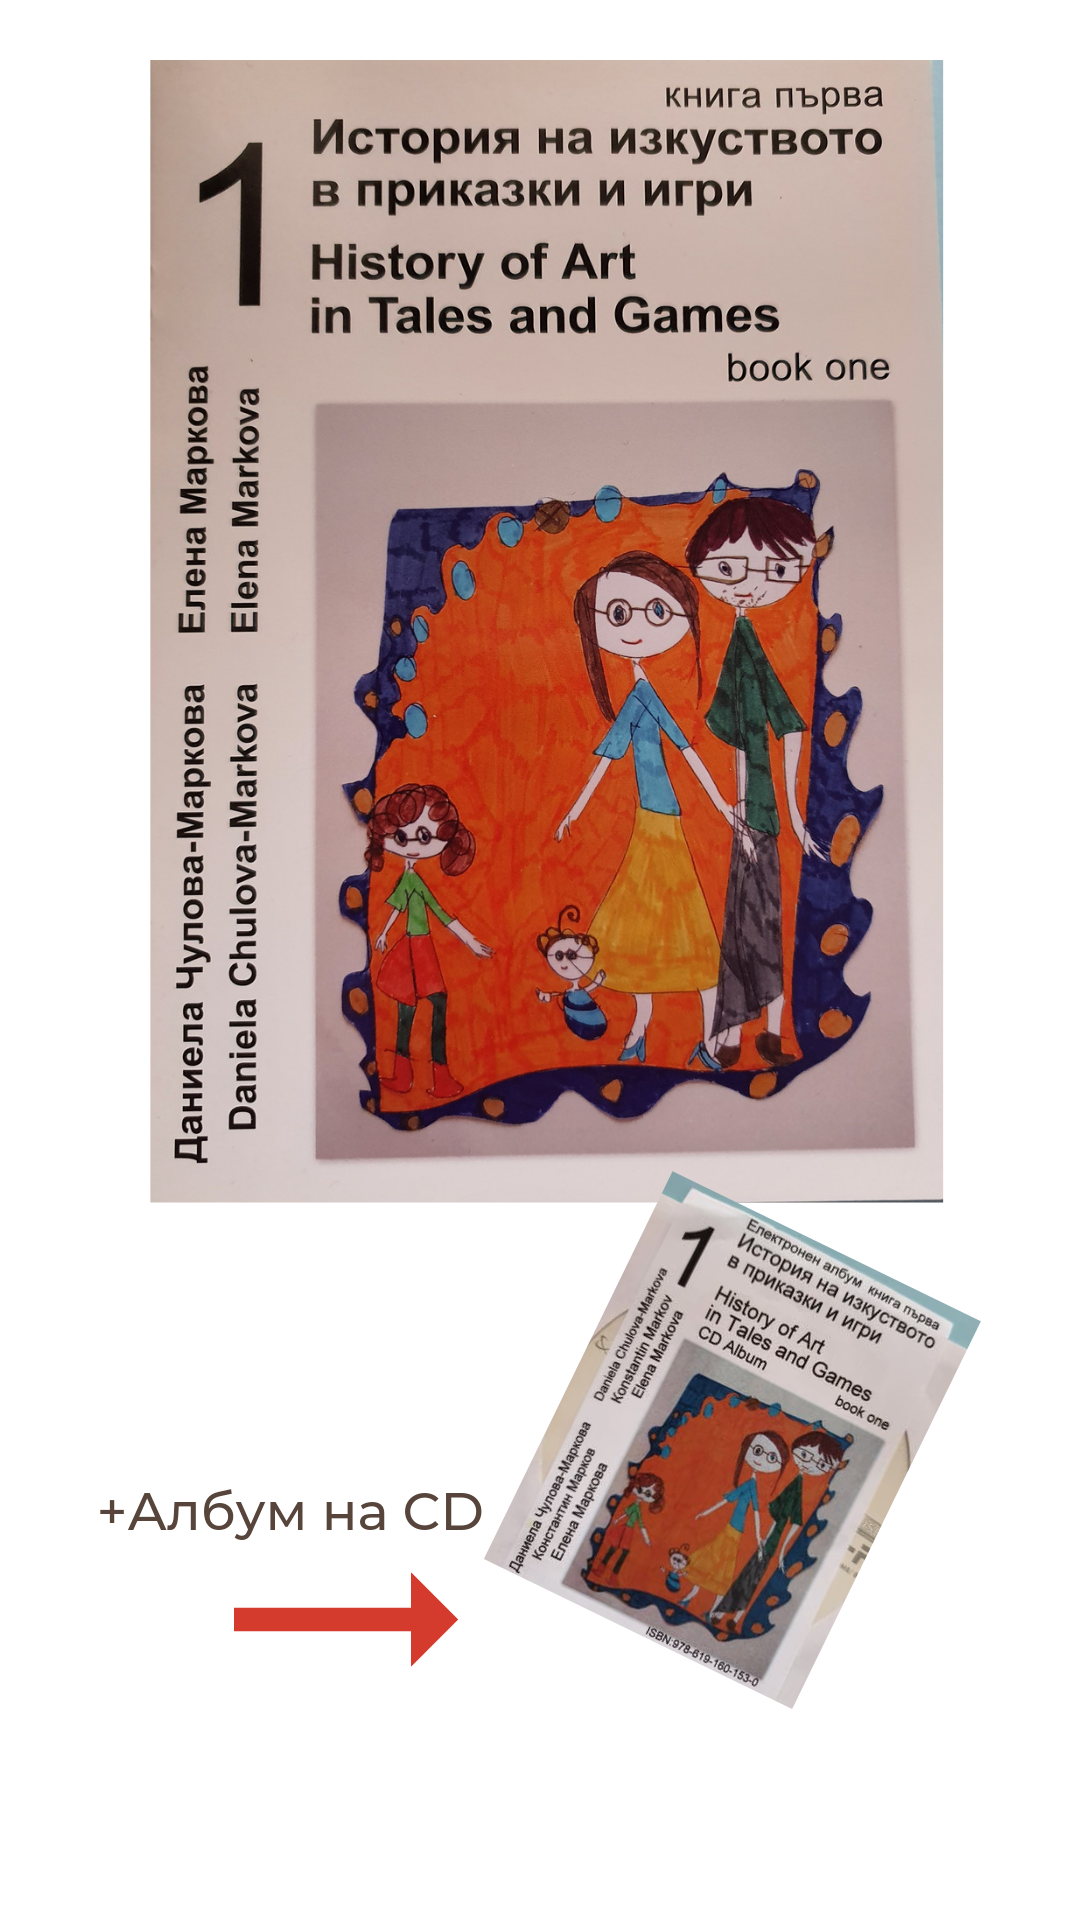 Книга със заглавие История на изкуството в приказки и игри, част 1, придружена от албум на електронен носител. На корицата е изобразен семеен ортрет - детска рисунка. 